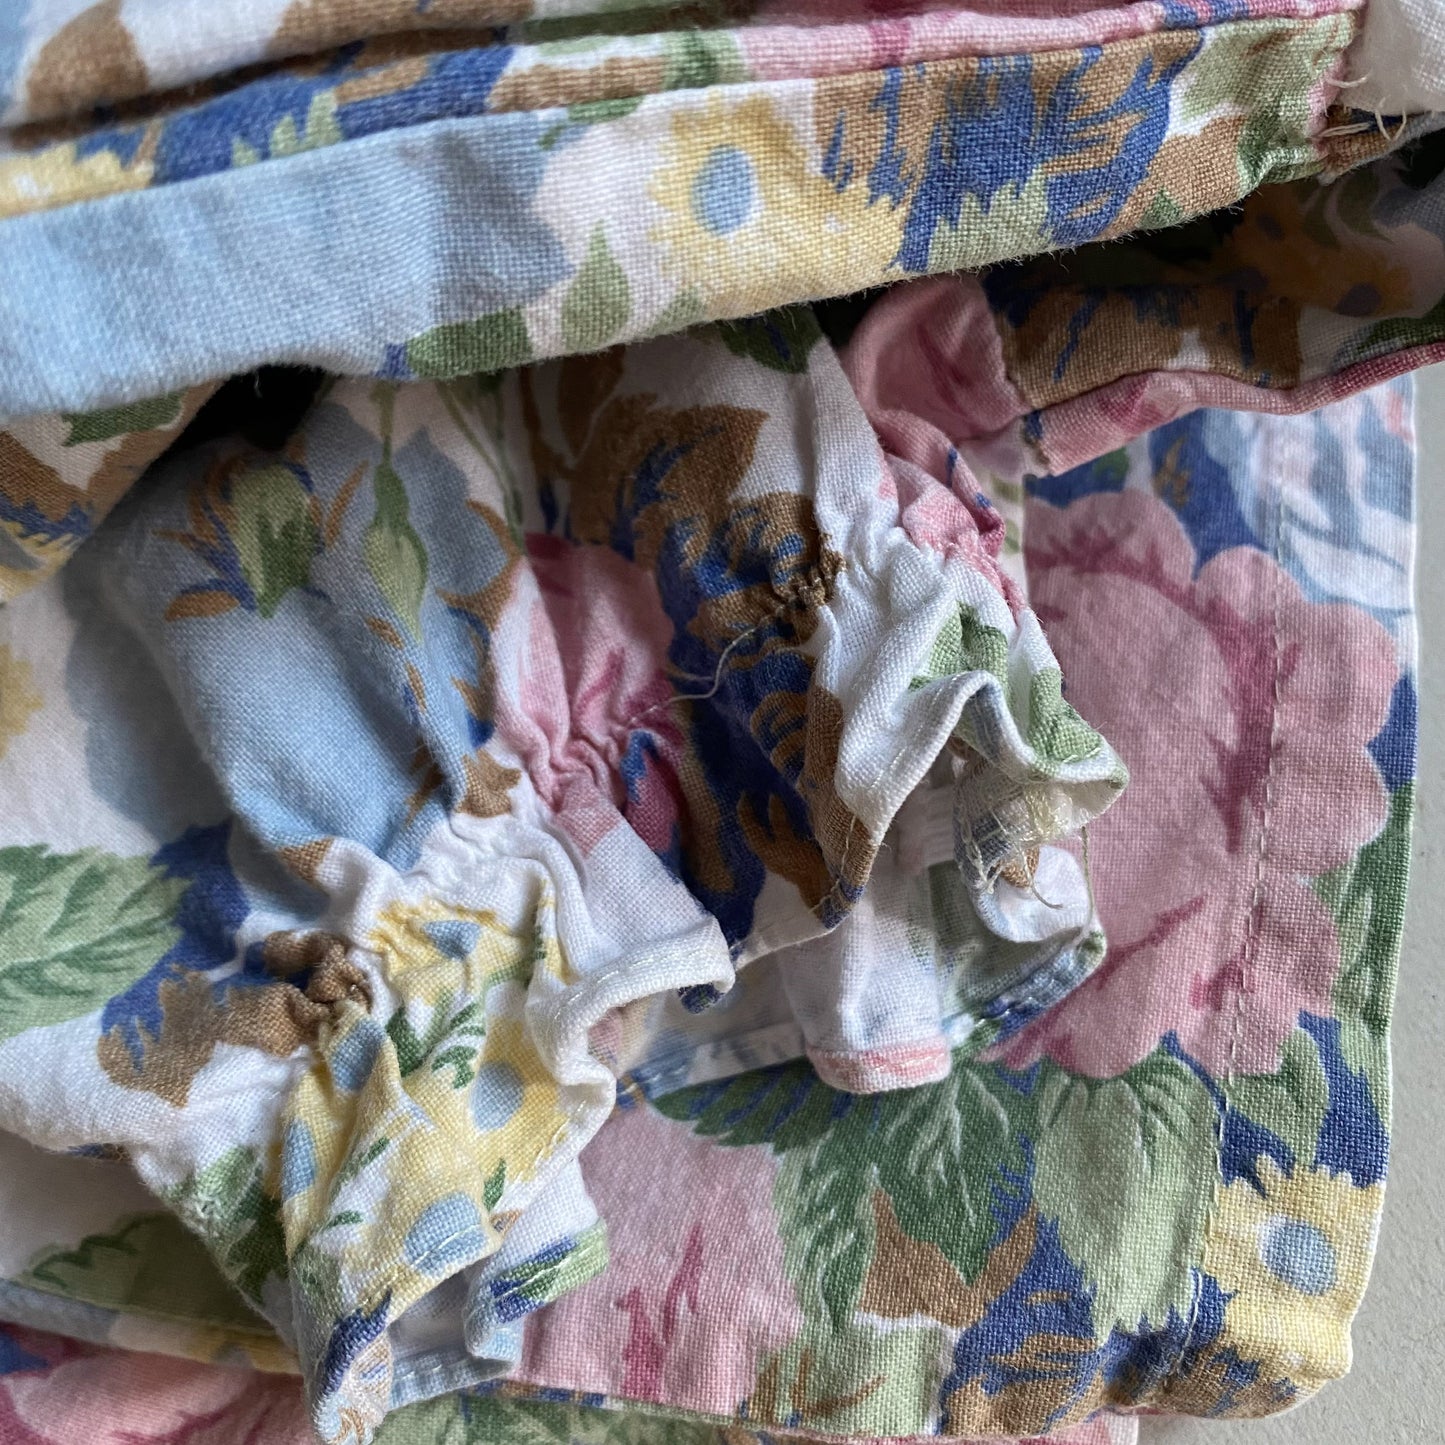 Vintage Floral Puff Sleeve Dress (4Y-5Y)